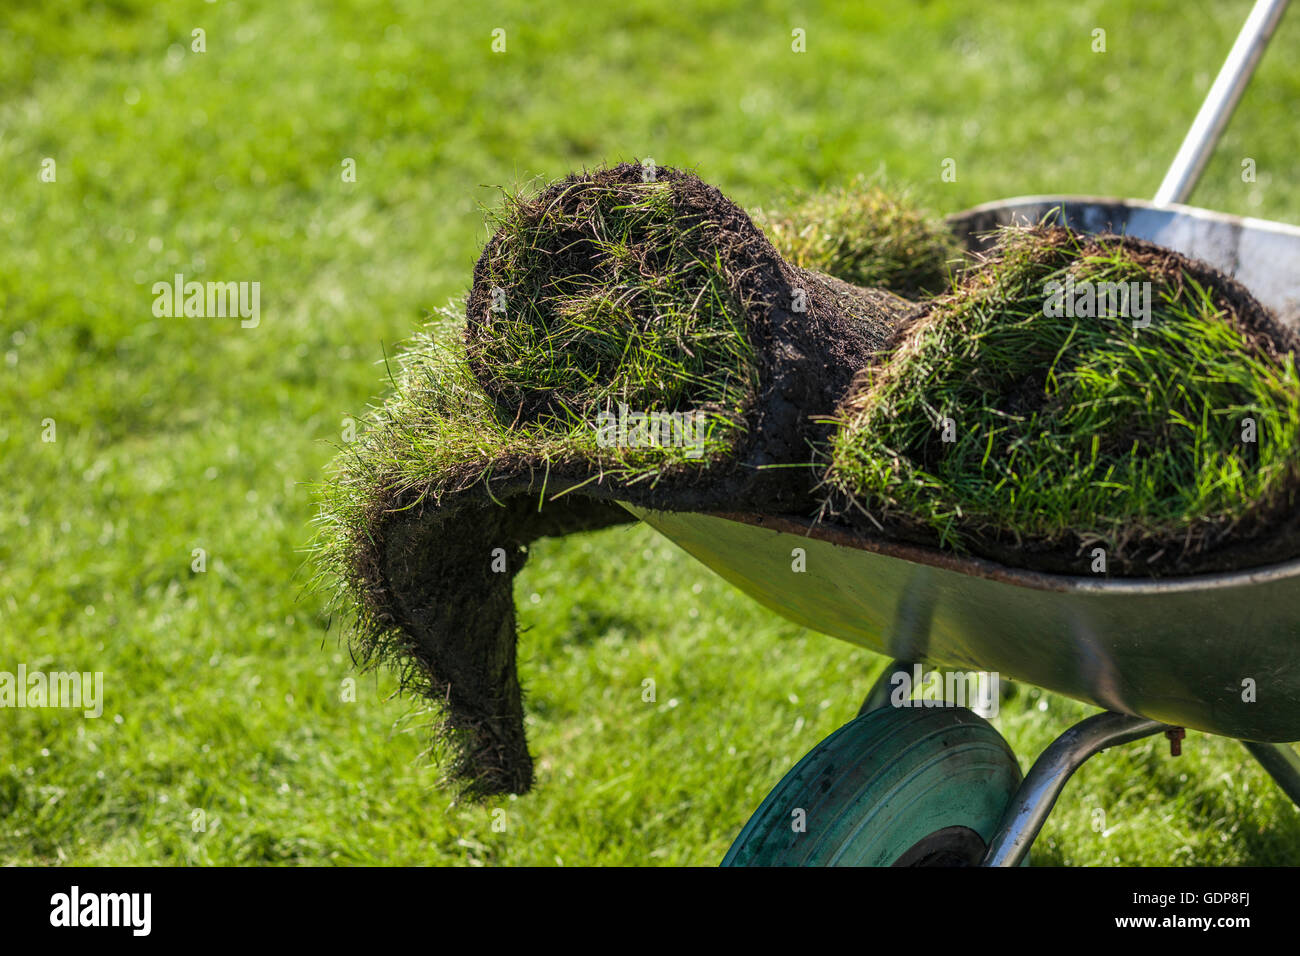 Turf rolls in garden wheelbarrow Stock Photo